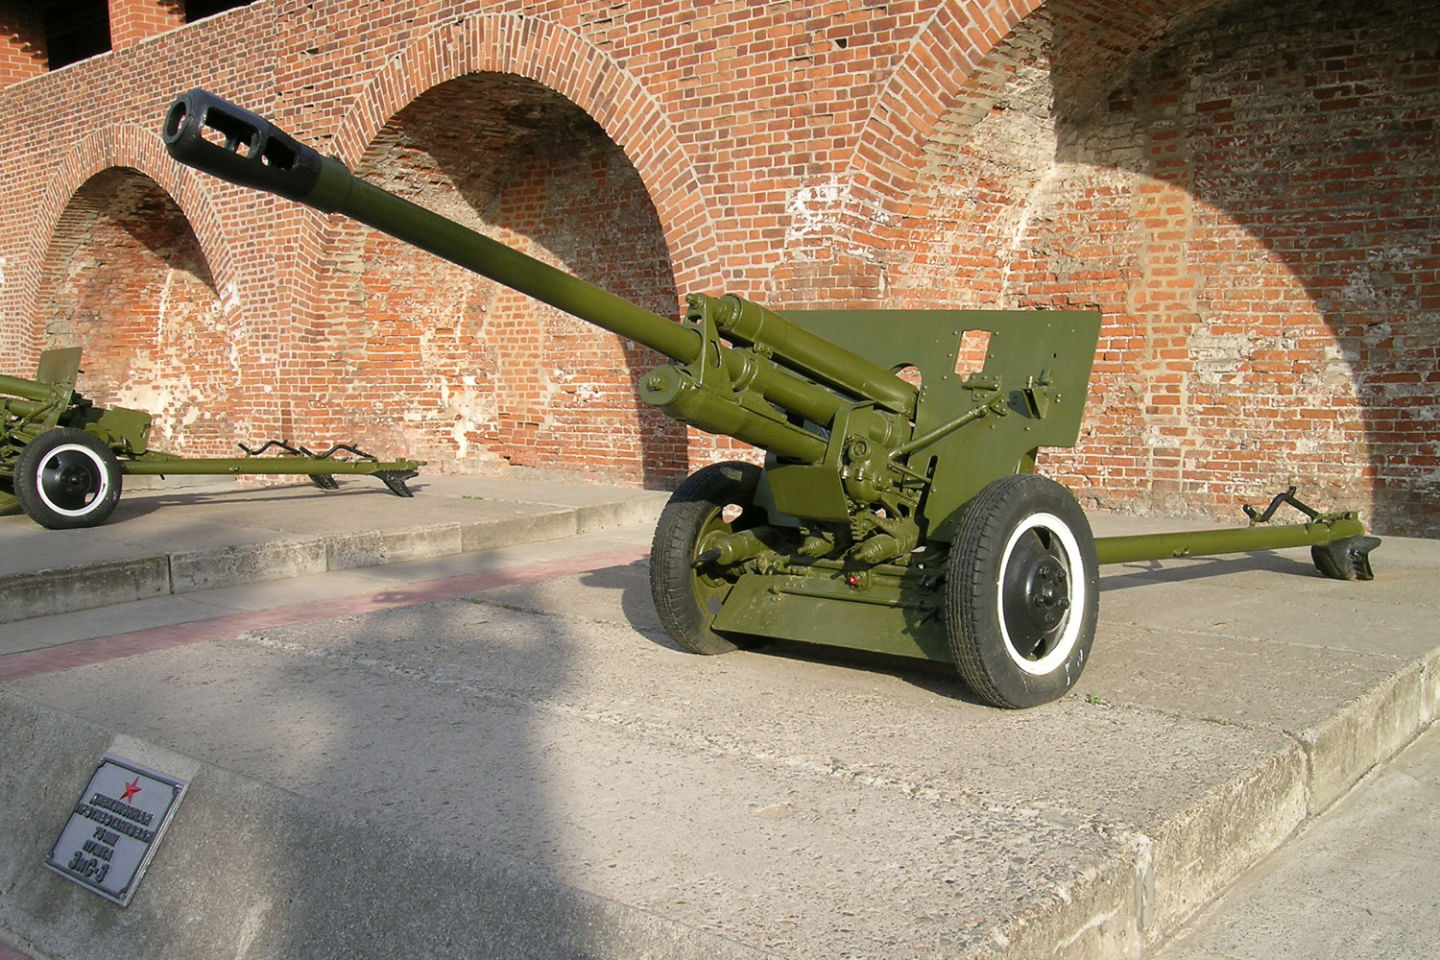 a19型122毫米加农炮图片